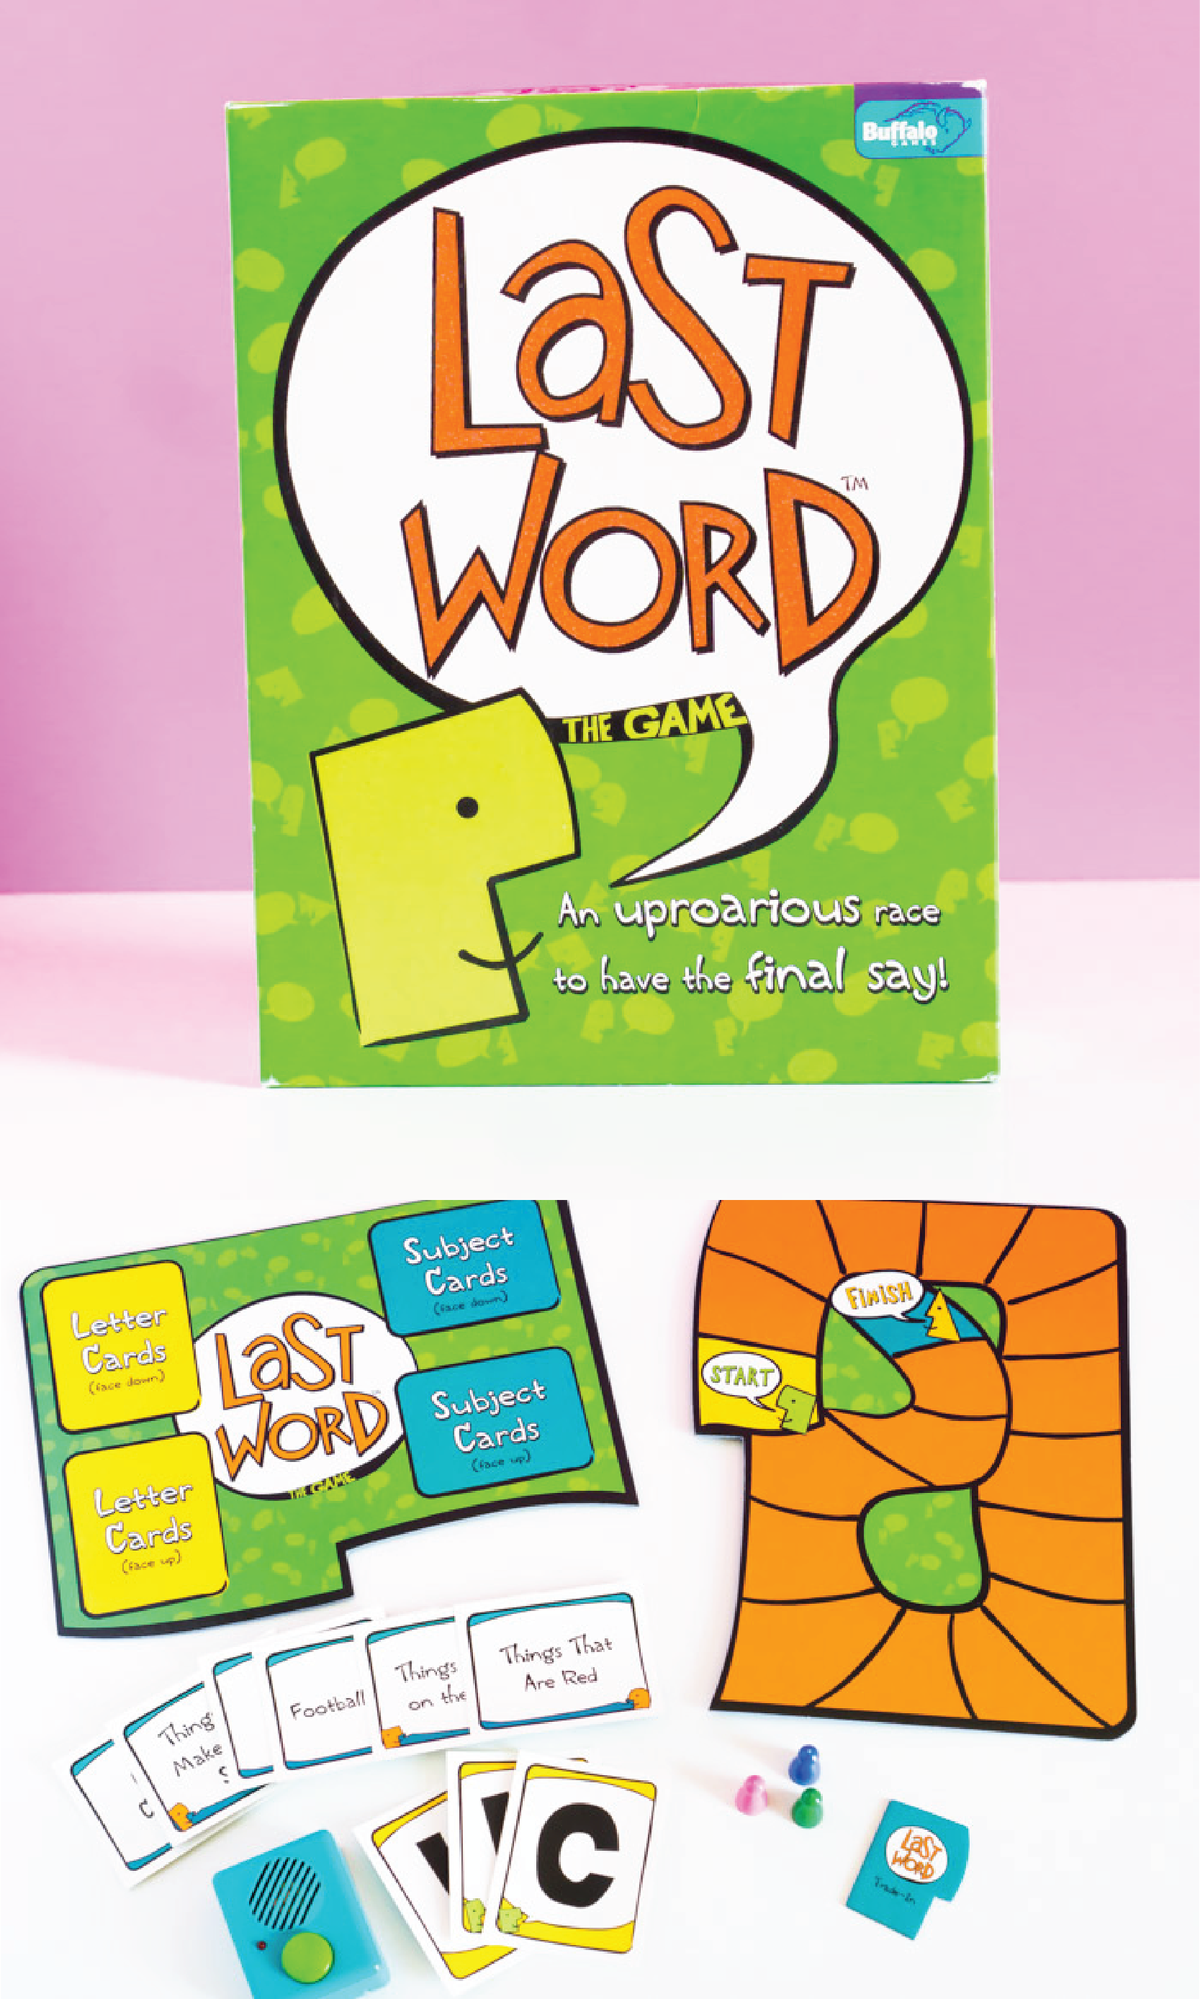 Last Word serà un dels vostres divertits jocs per a adults